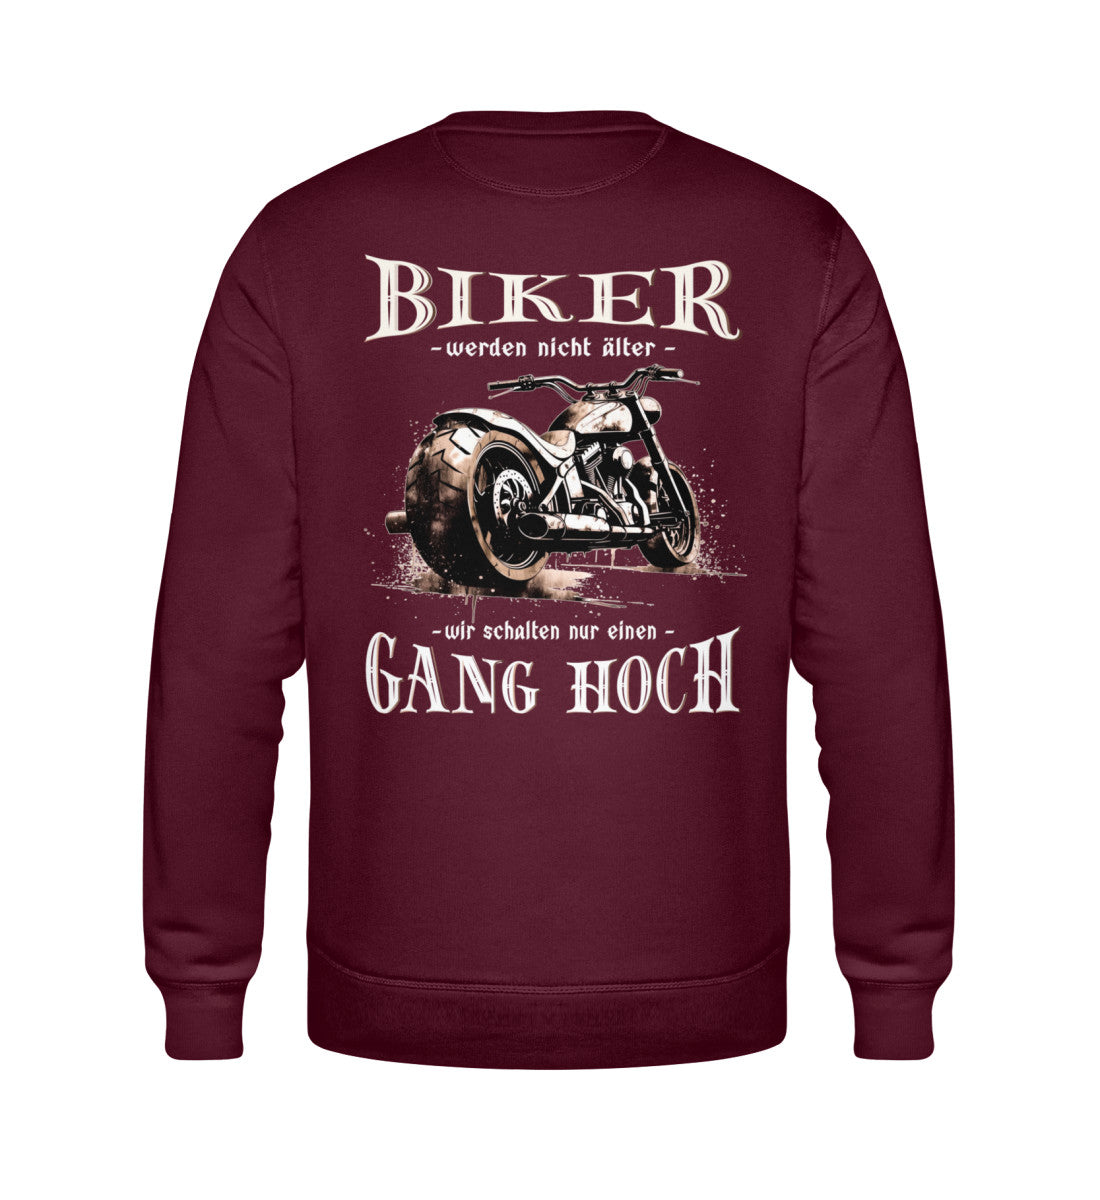 Ein Biker Sweatshirt für Motorradfahrer von Wingbikers mit dem Aufdruck, Biker werden nicht älter - Wir schalten nur einen Gang hoch! mit Back Print, in burgunder weinrot.